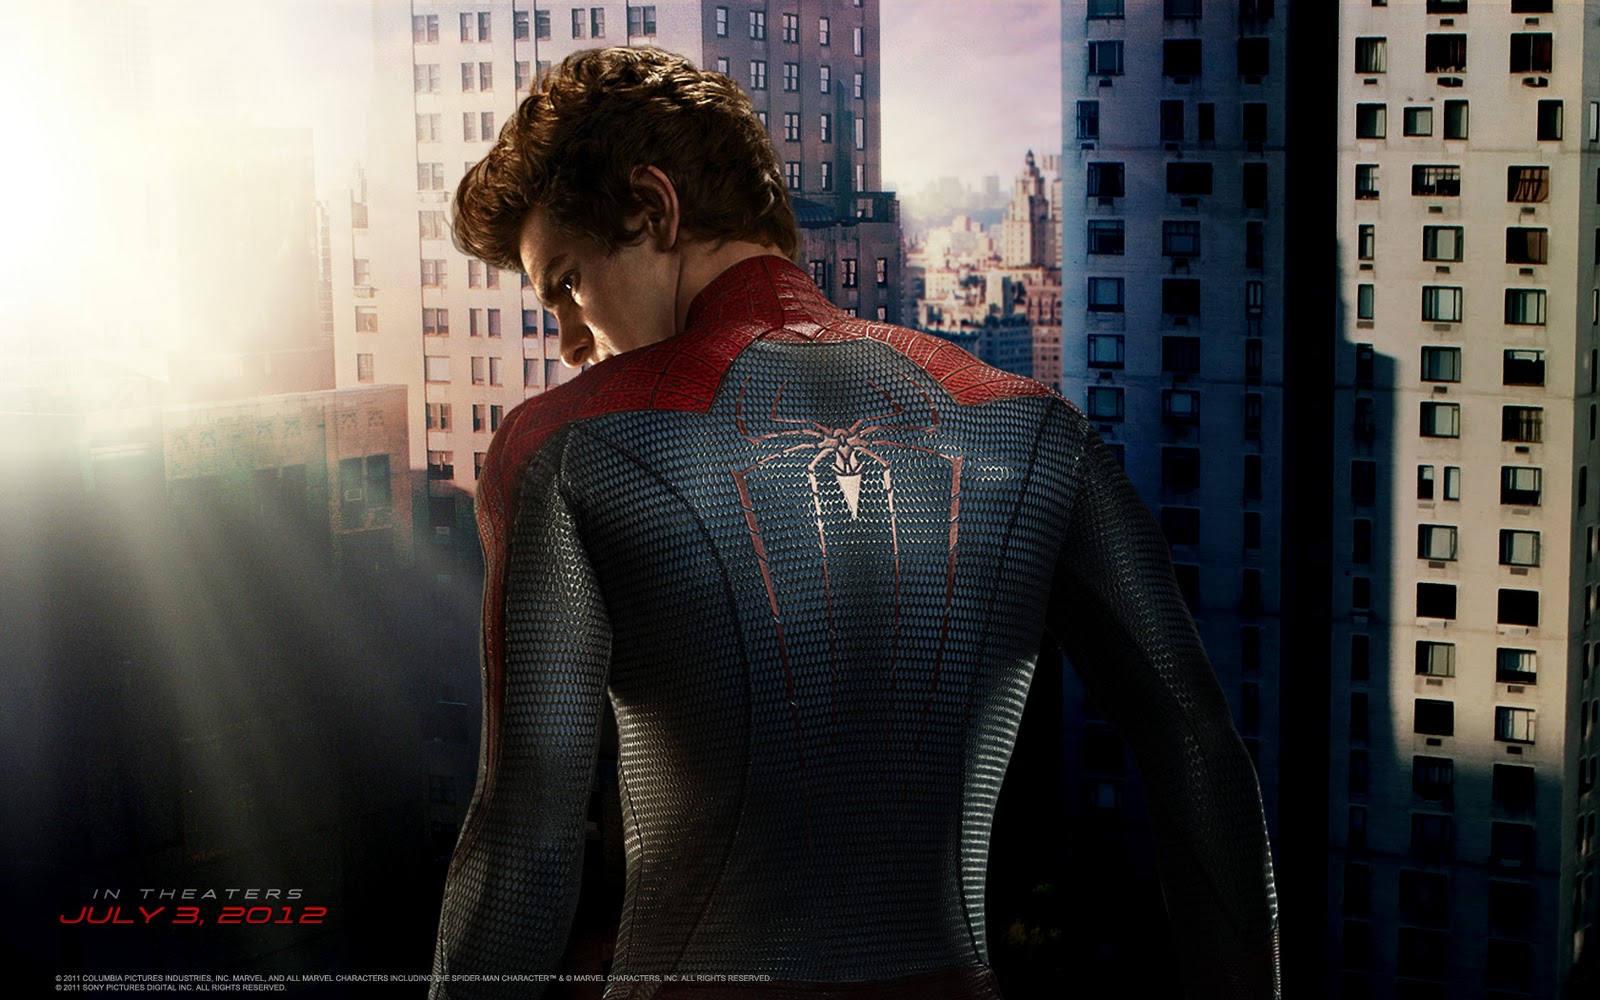 http://4.bp.blogspot.com/-JoKkbFOsFpY/UAn6ELaM8CI/AAAAAAAAAB8/YbLMp8nVhkM/s1600/The-Amazing-Spider-Man.jpg